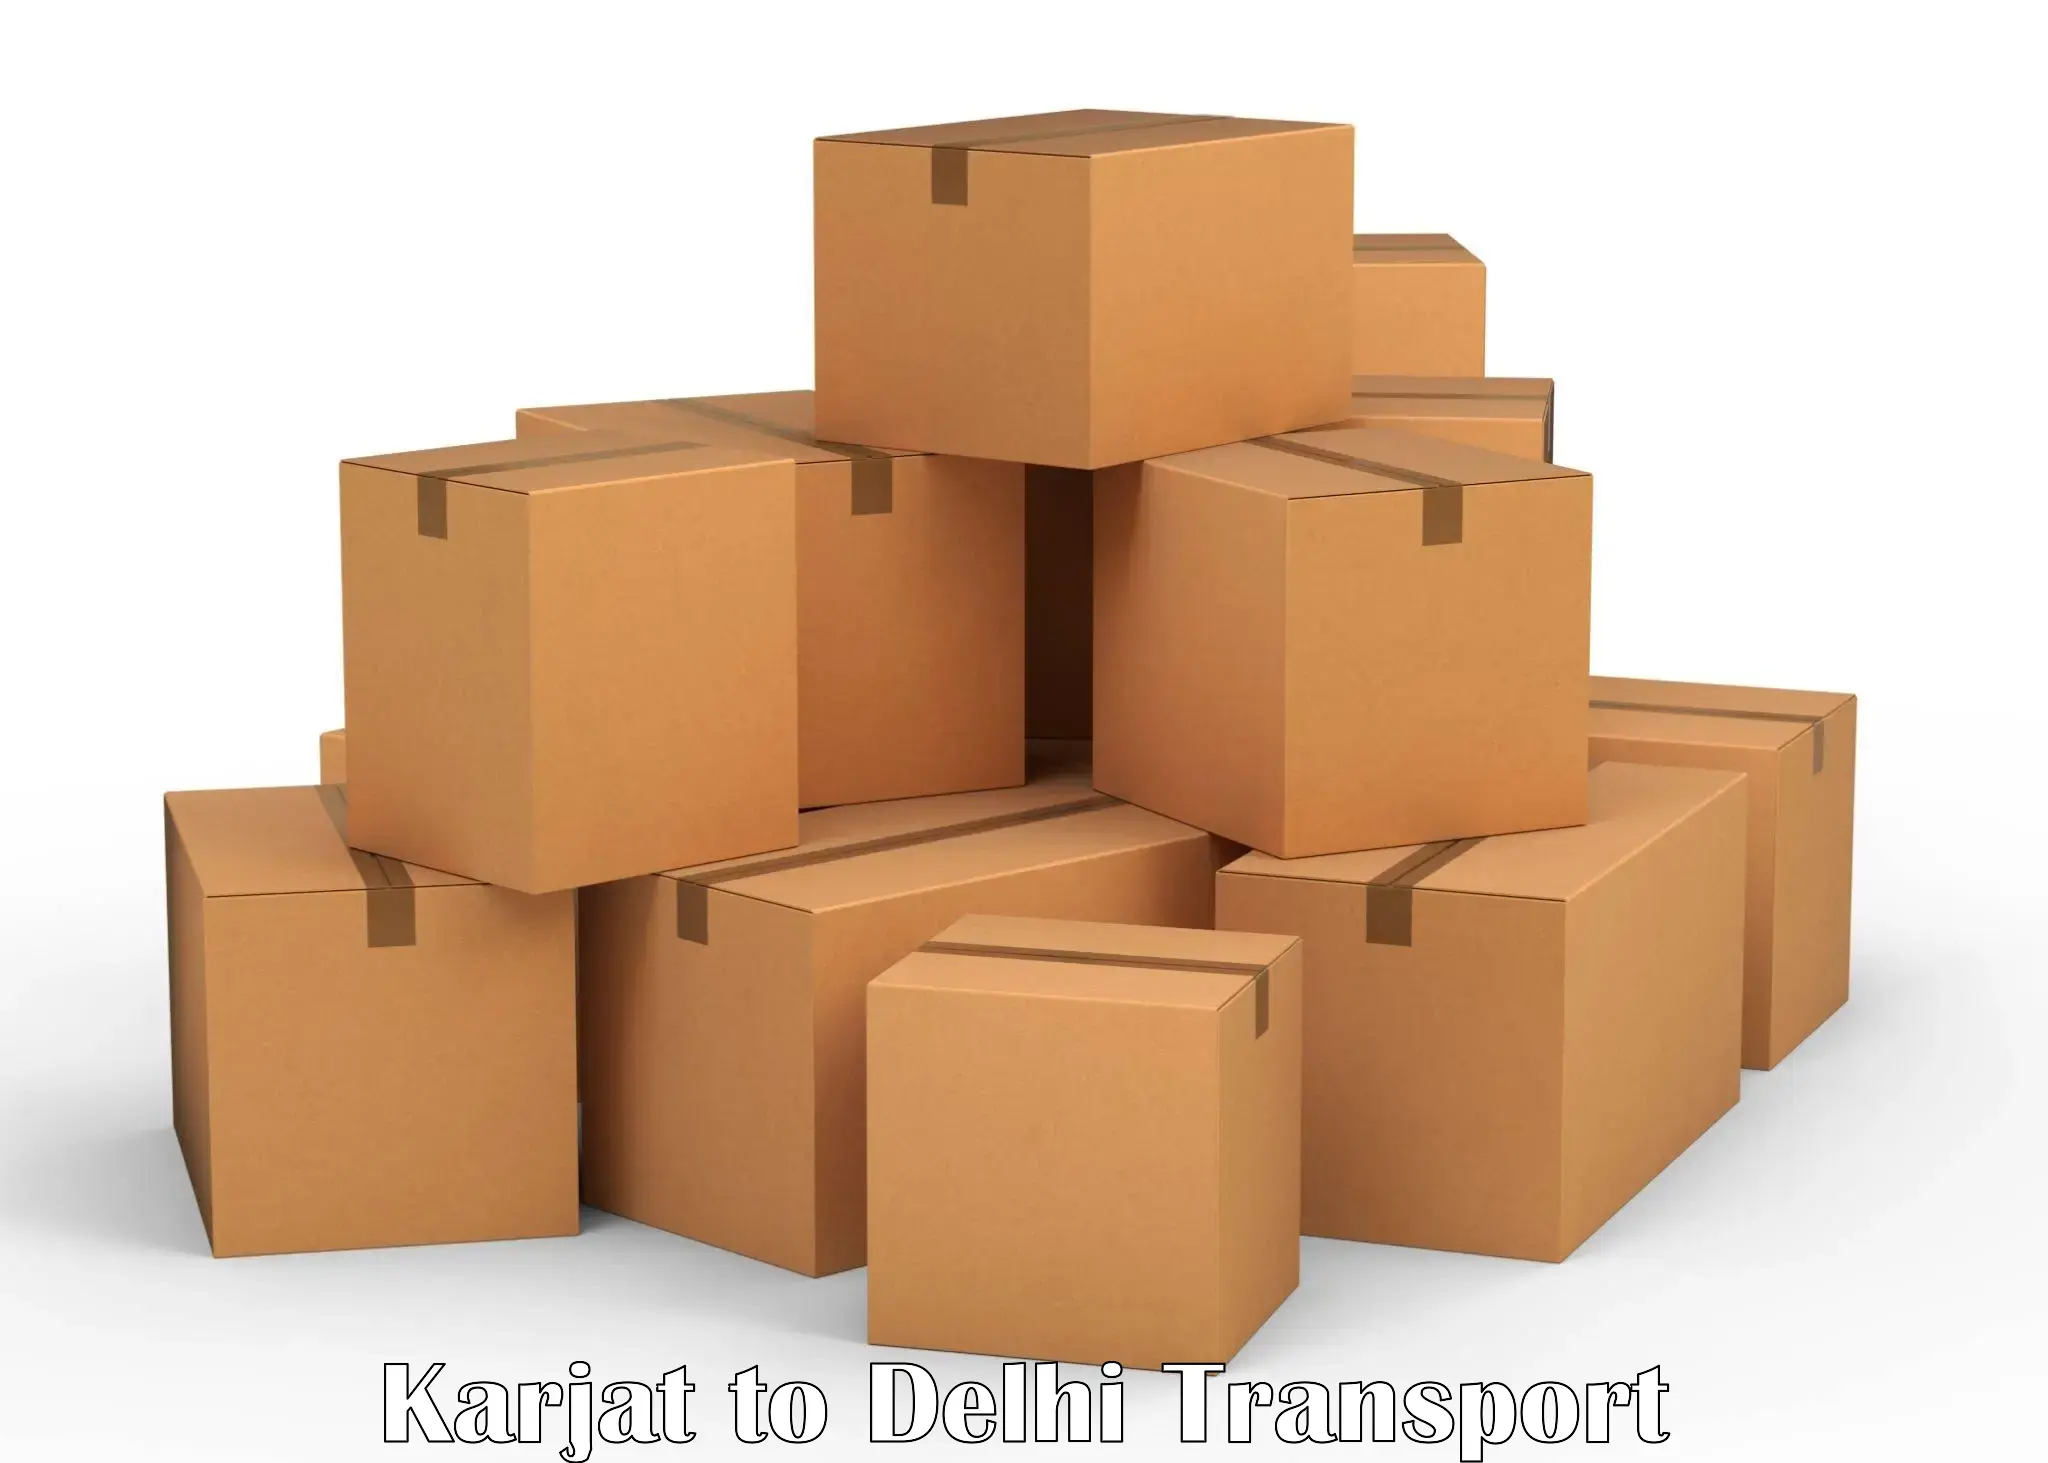 Vehicle parcel service Karjat to Burari